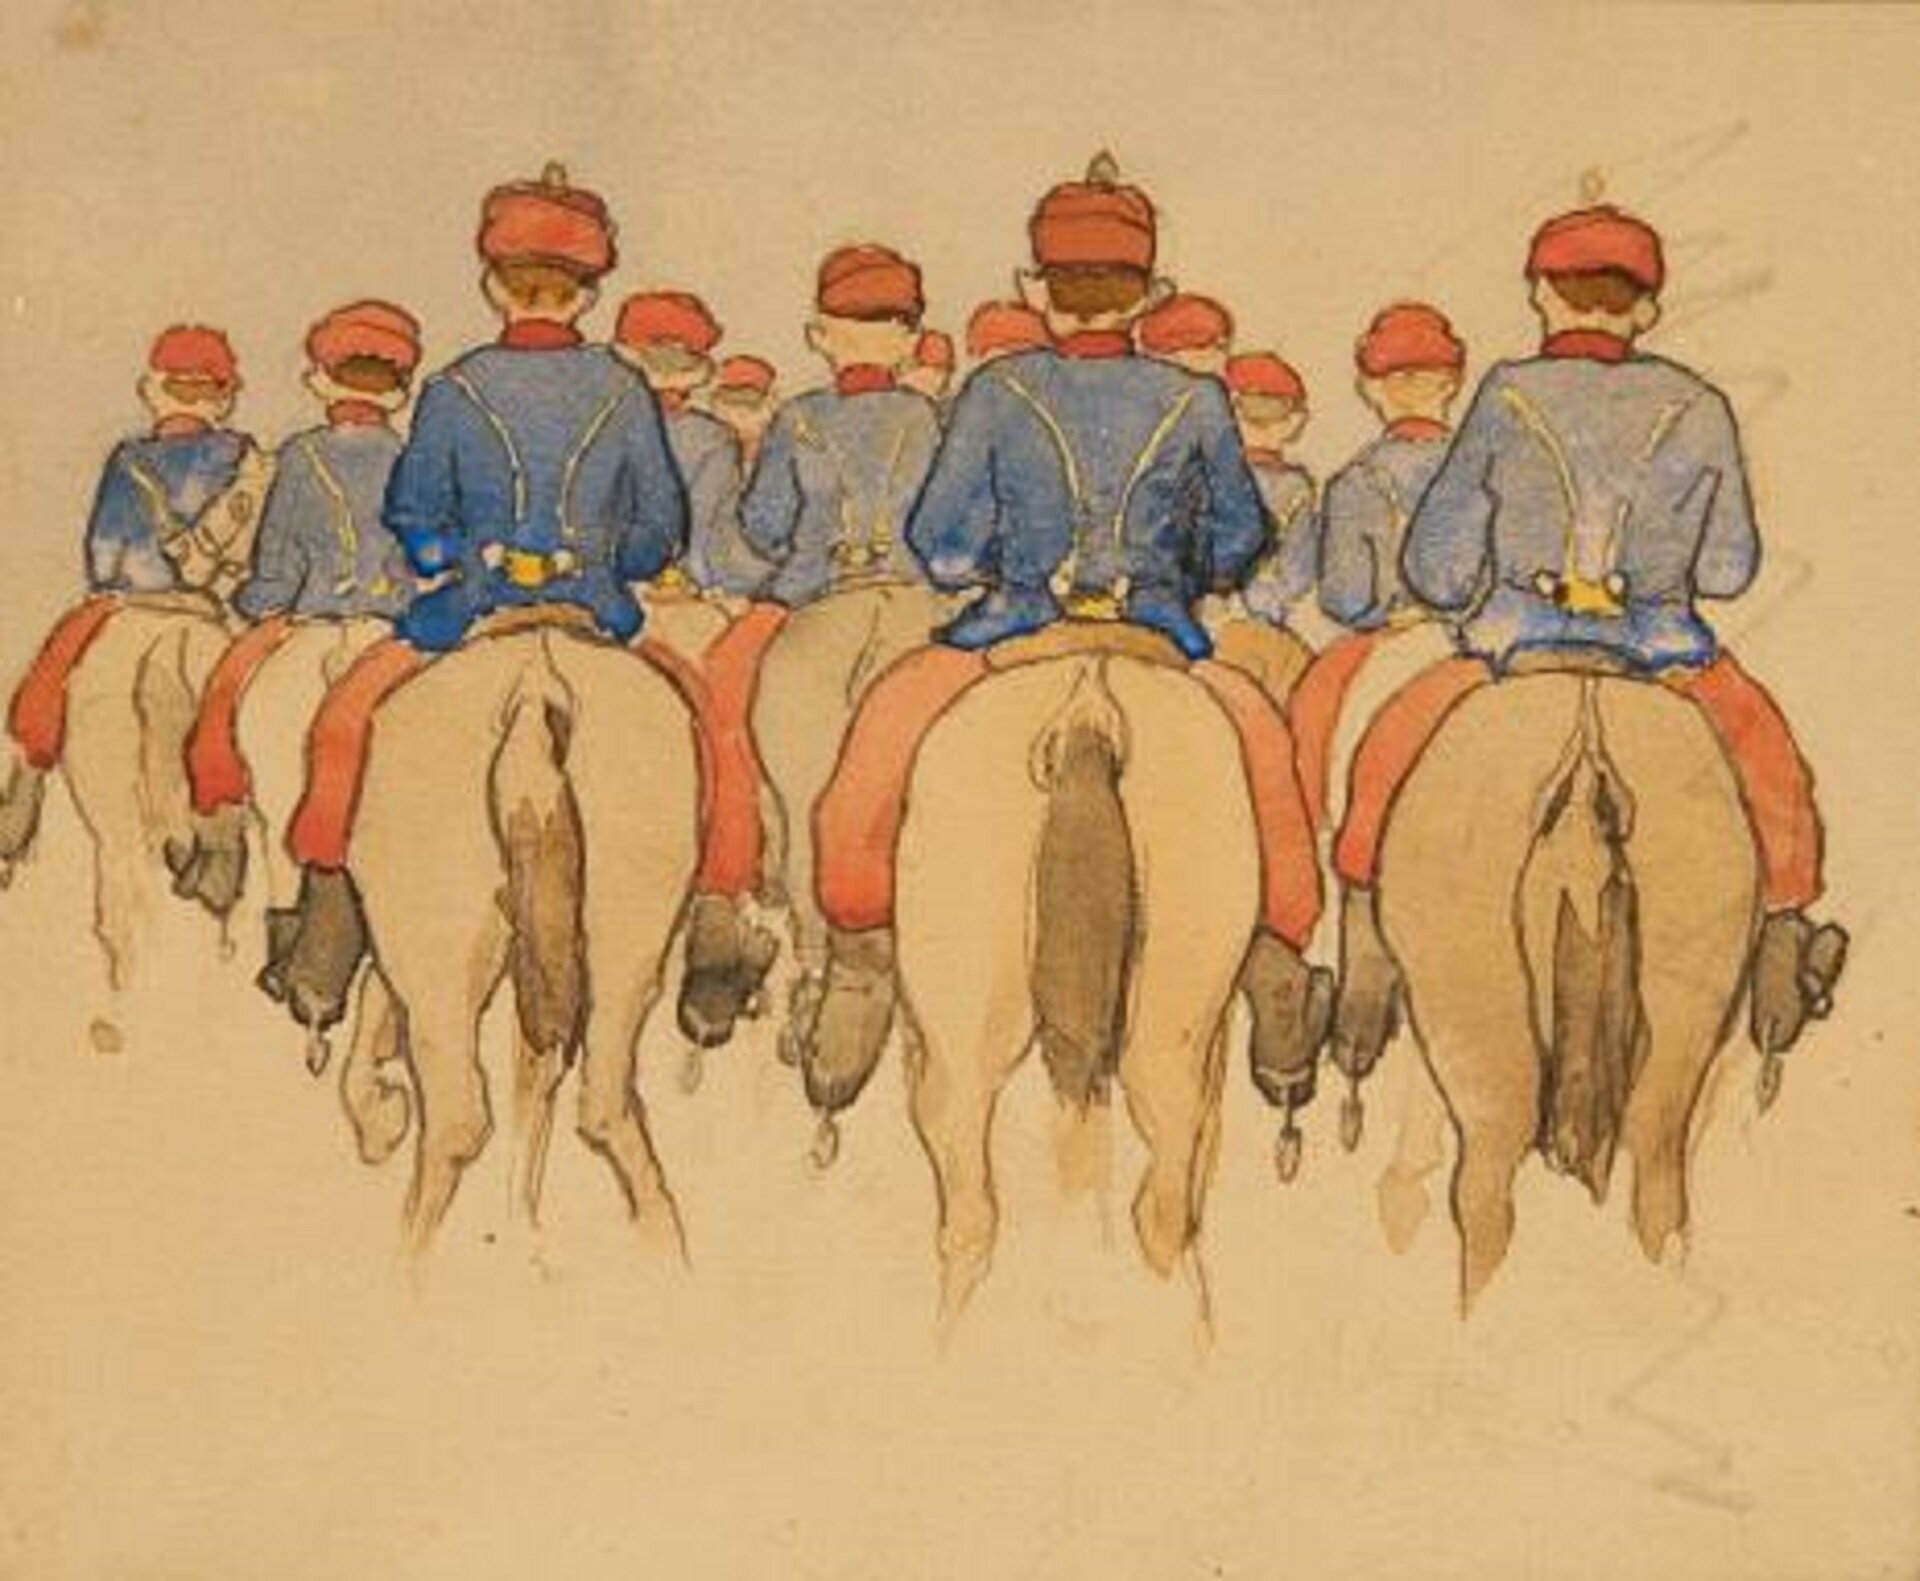 Ilustracja przedstawia obraz „Escadron Schritt” autorstwa Artura Grottgera. W centrum akwareli, na beżowym tle papieru, znajduje się grupa jeźdźców na koniach. Żołnierze ukazani są tyłem. Artysta namalował jedynie ich plecy oraz zady koni, na których siedzą. Wszyscy mężczyźni ubrani są w takie same niebieskie kurtki, czerwone spodnie i czapki. Ustawieni są w kilku rzędach. Kompozycja akwareli jest zamknięta, centralna – najważniejsze jej elementy znalazły się w centrum obrazu.